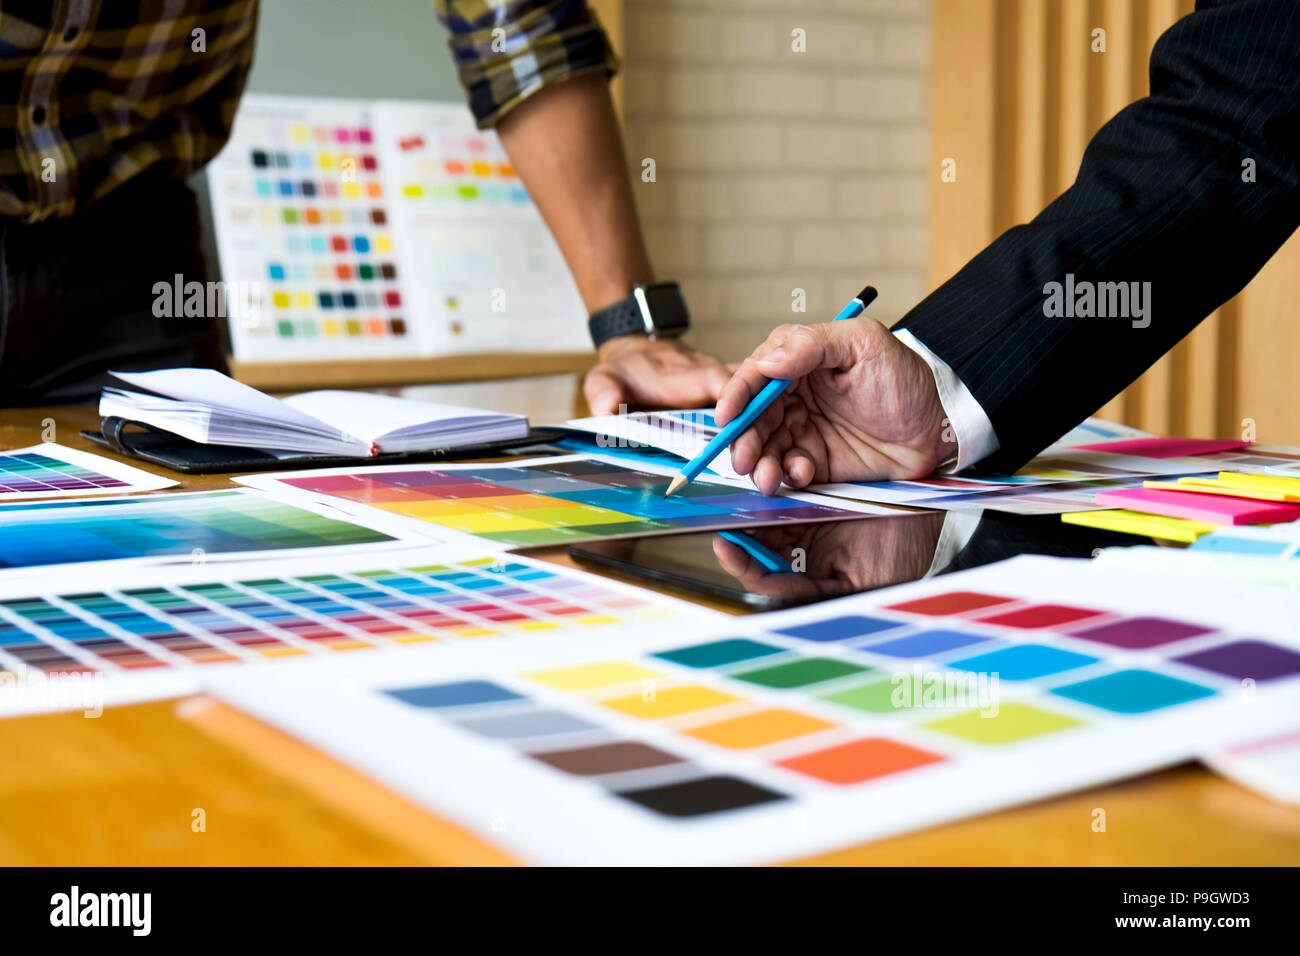 Les concepteurs graphiques utiliser la tablette pour choisir les couleurs de la barre de couleur par exemple pour les idées de conception, dessins ou modèles créatifs de graphistes concept. Banque D'Images